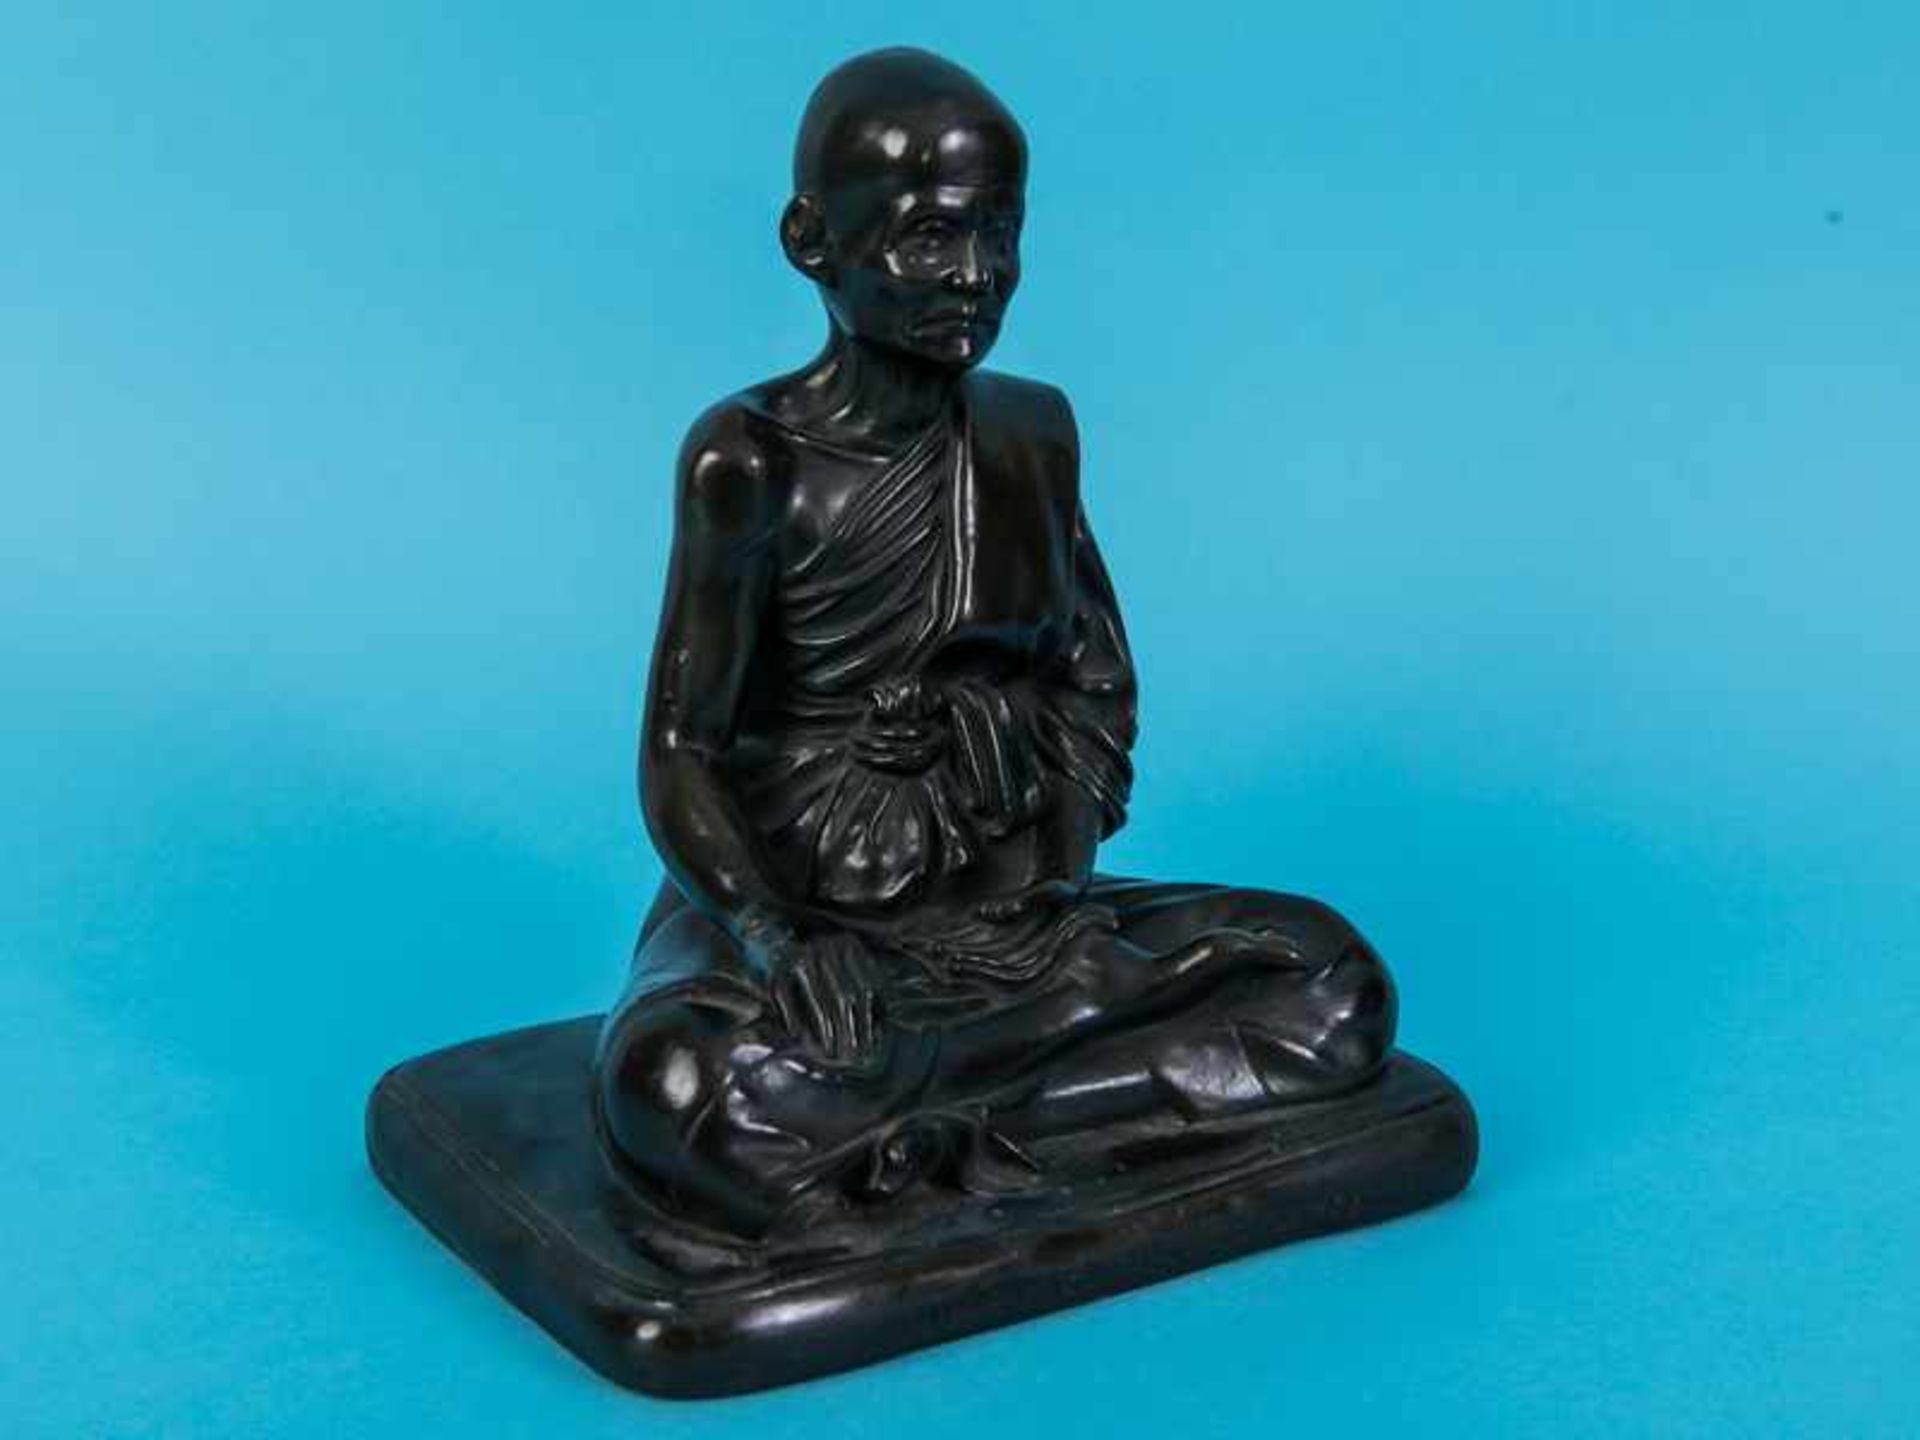 Figurenplastik "Buddhistischer Mönch", Thailand, 19./20. Jh. Bronze, dunkelbraunfarbig patiniert; - Image 5 of 9